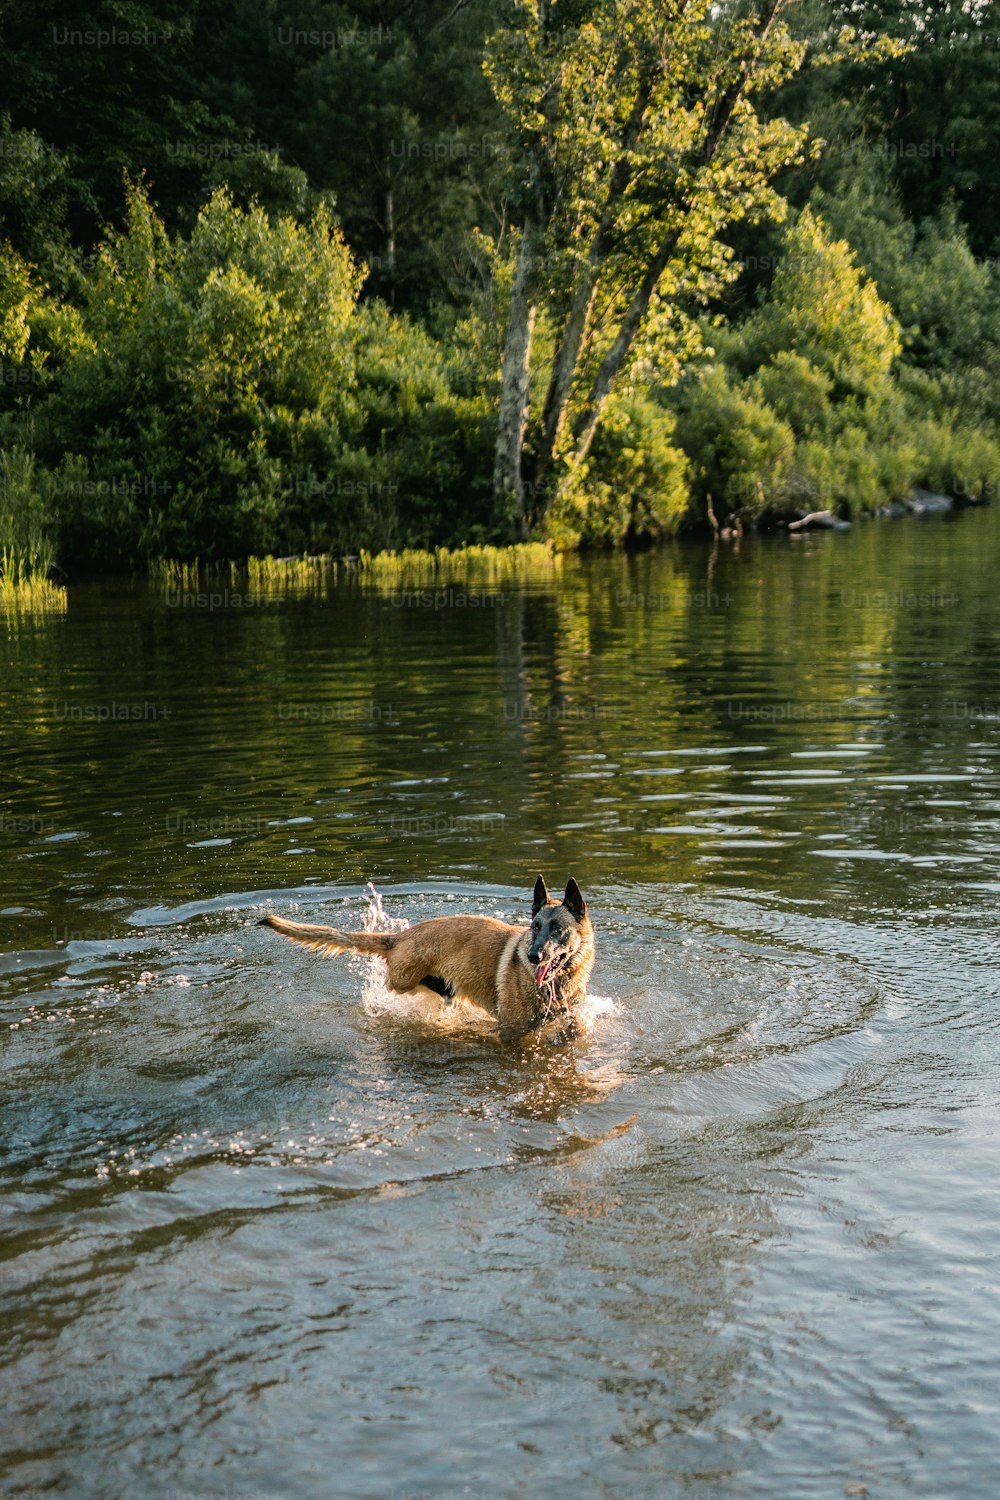 Un chien nage dans un lac avec des arbres en arrière-plan